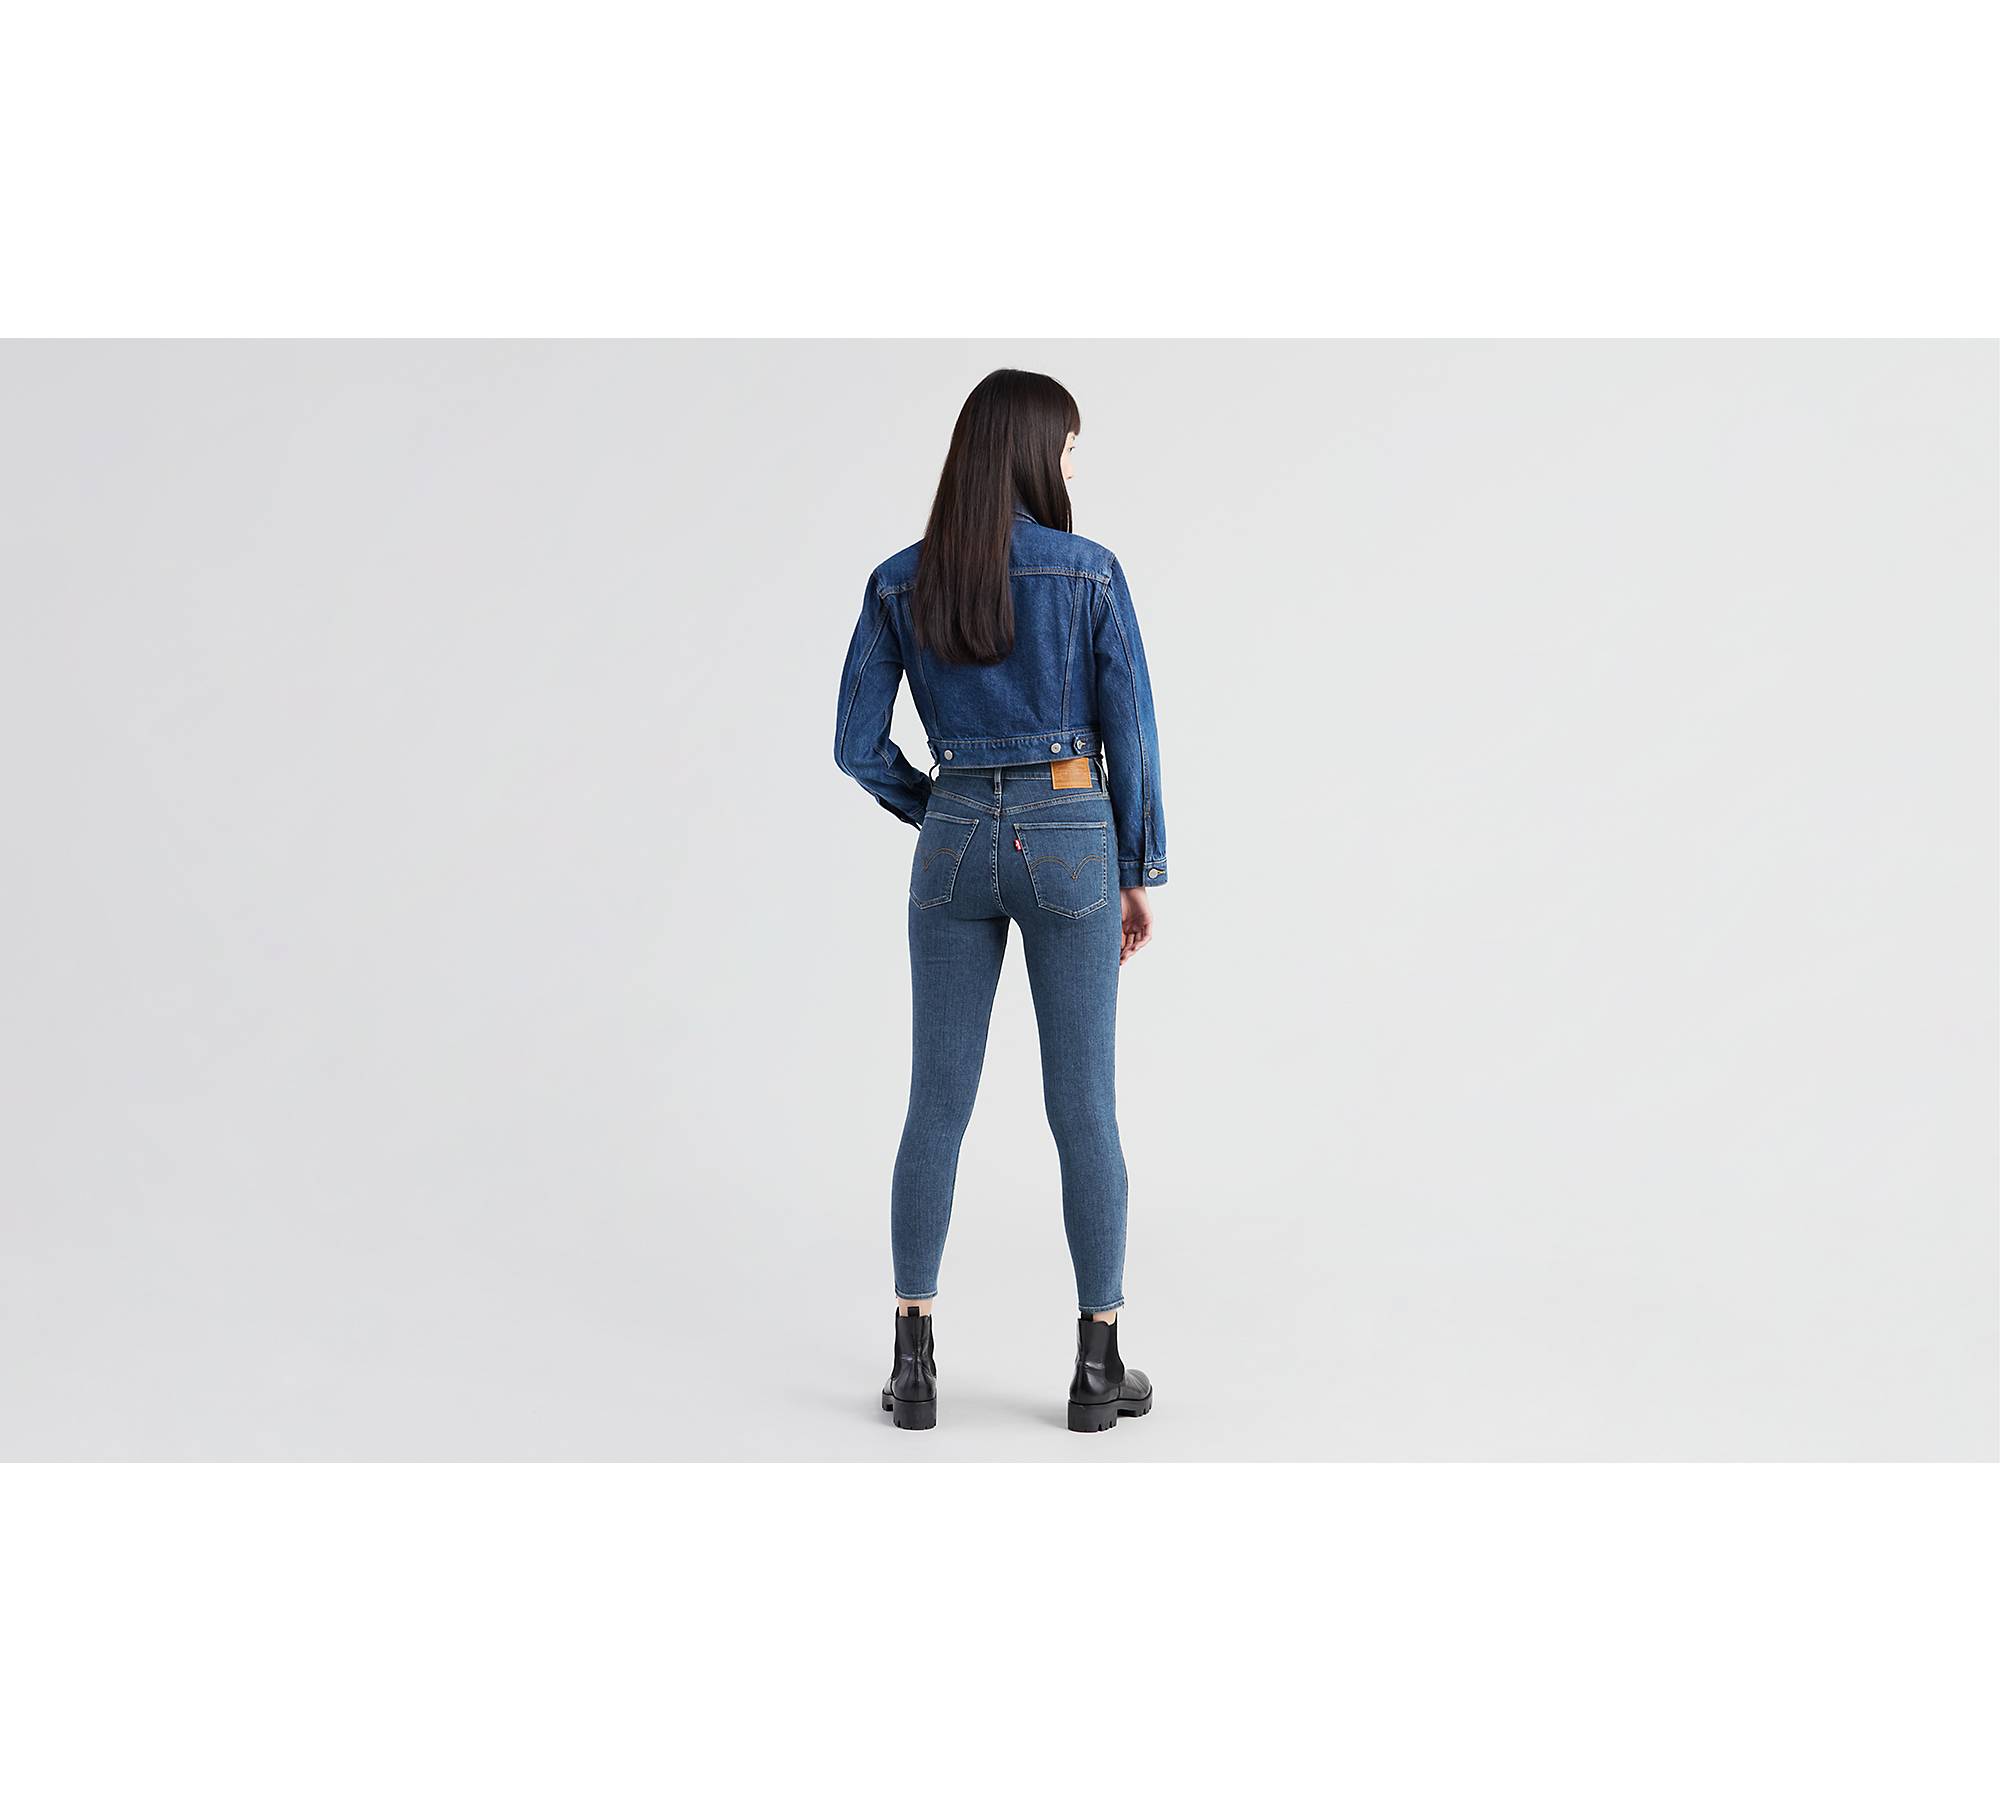 Mile High Ankle Zip Women's Jeans - Dark Wash